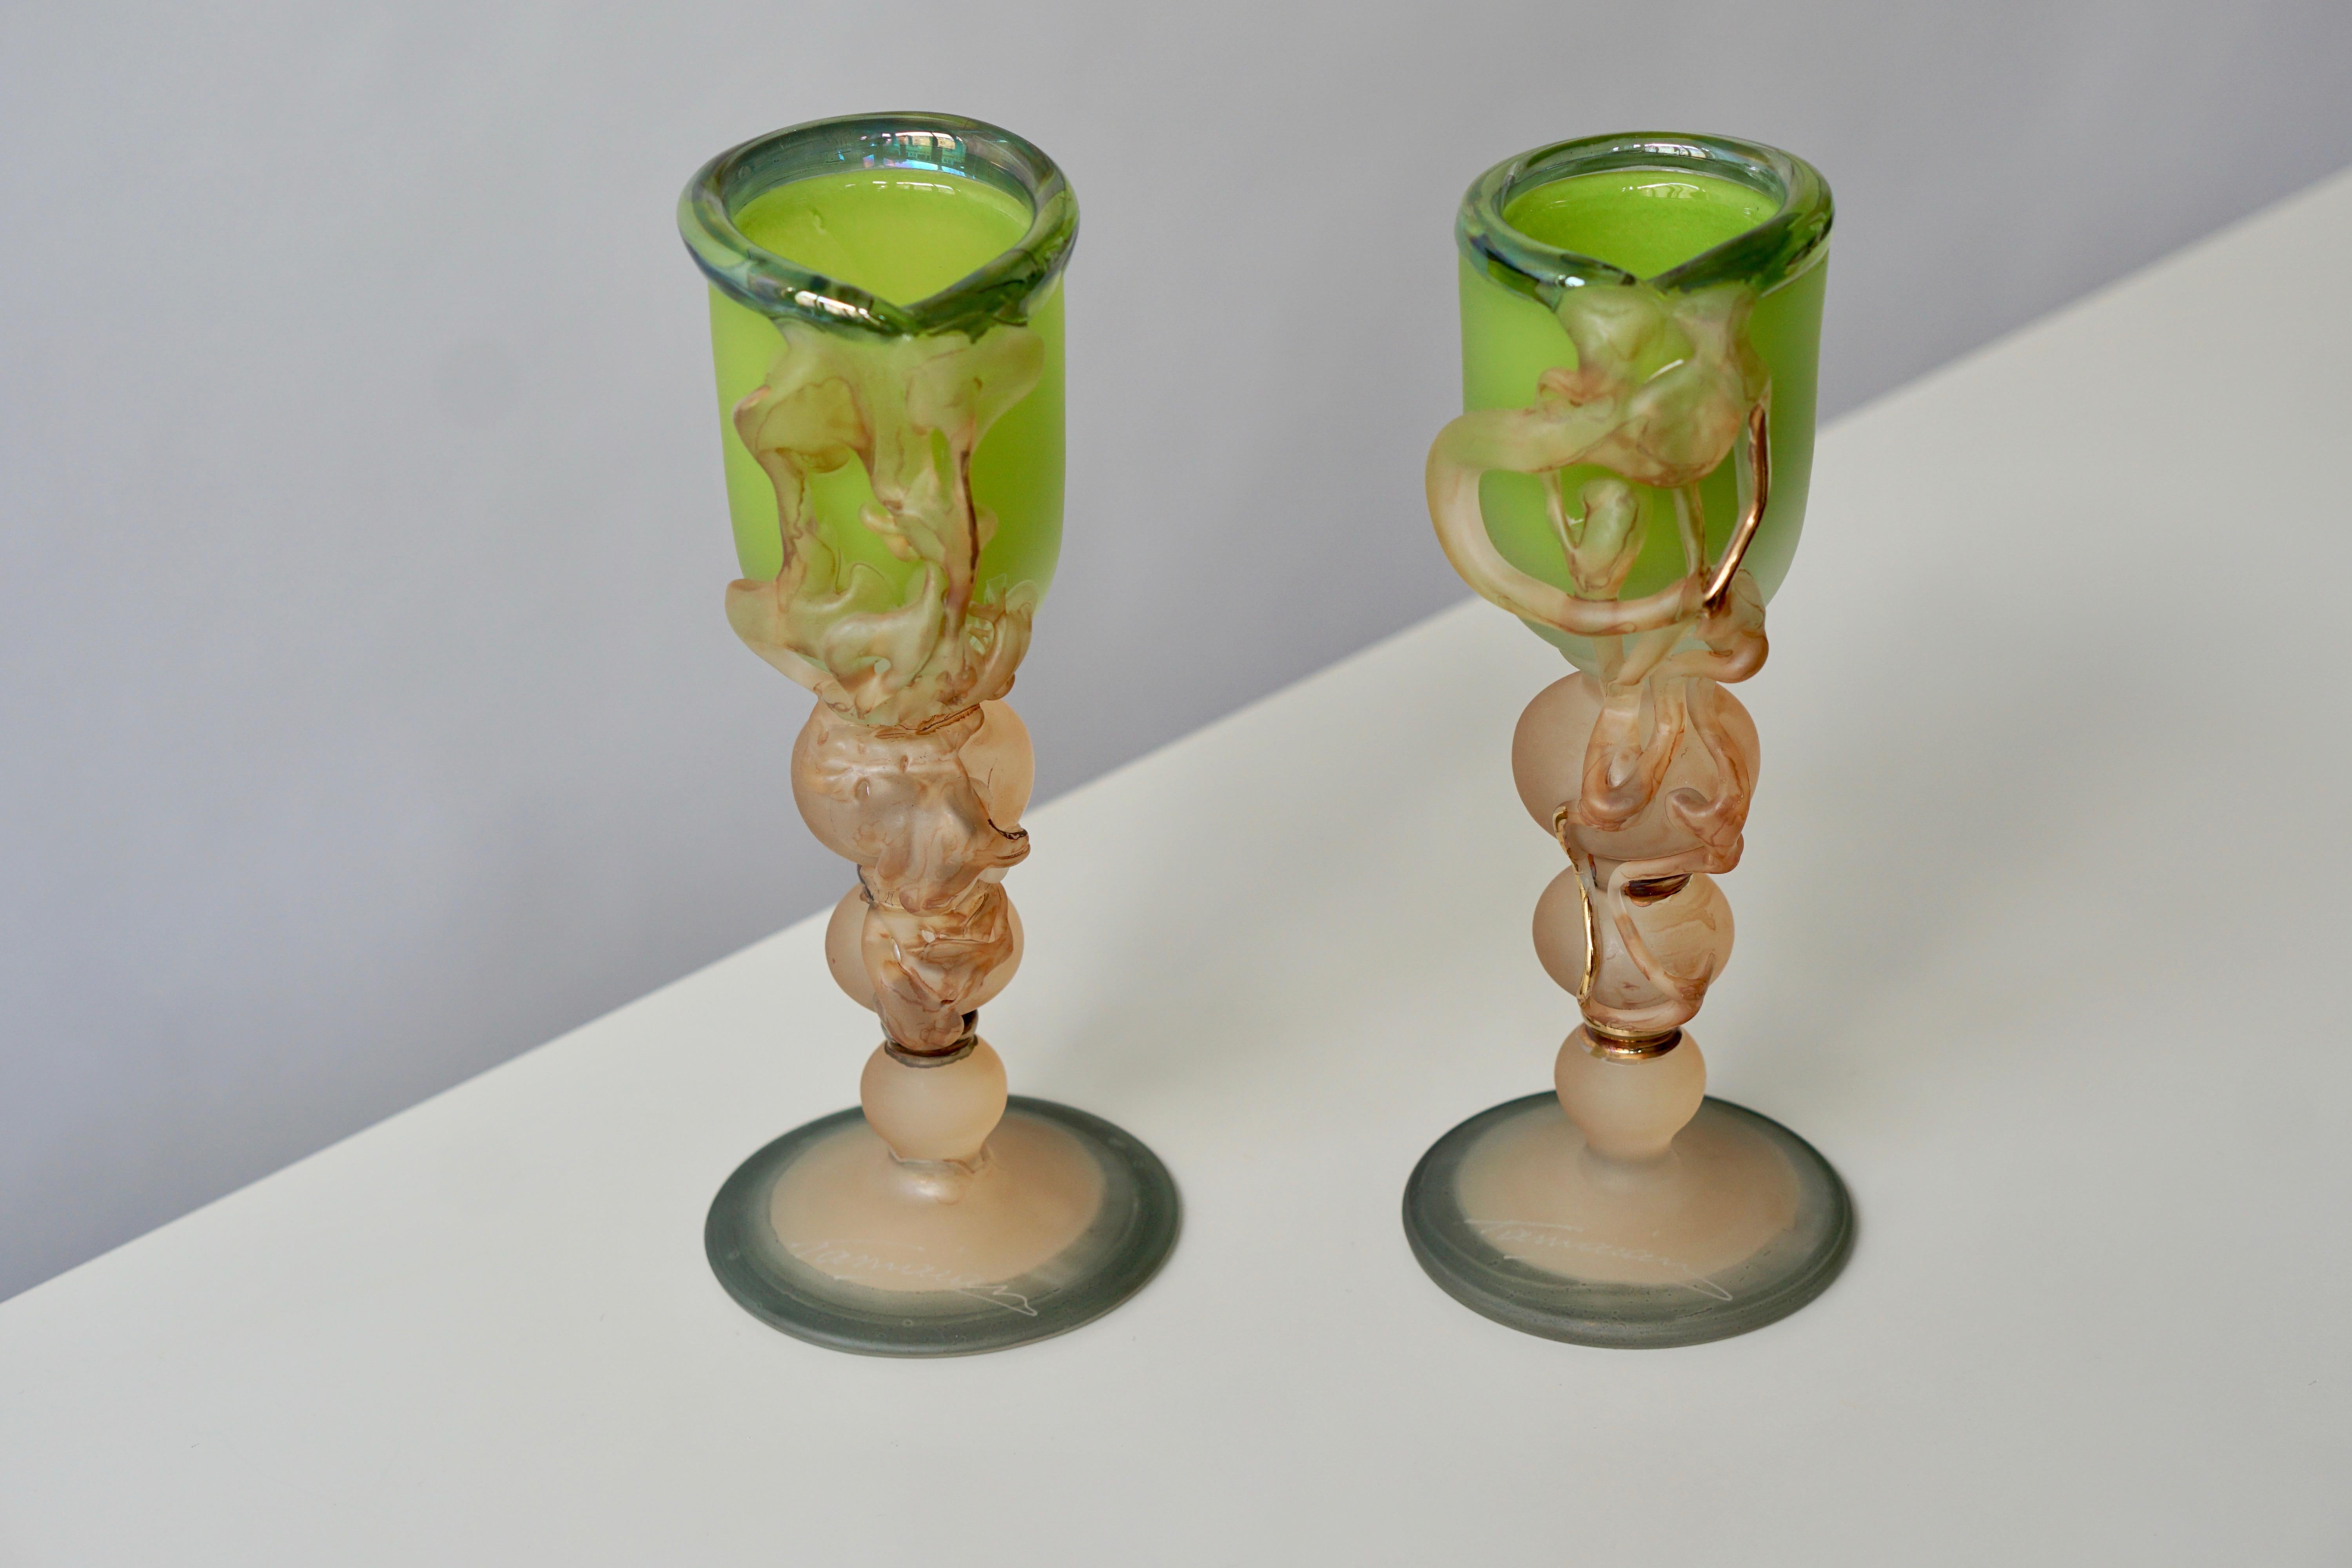 Zwei ornamentale Gläser von Tamaian.
Maße: Höhe 22cm.
Durchmesser 9 cm.